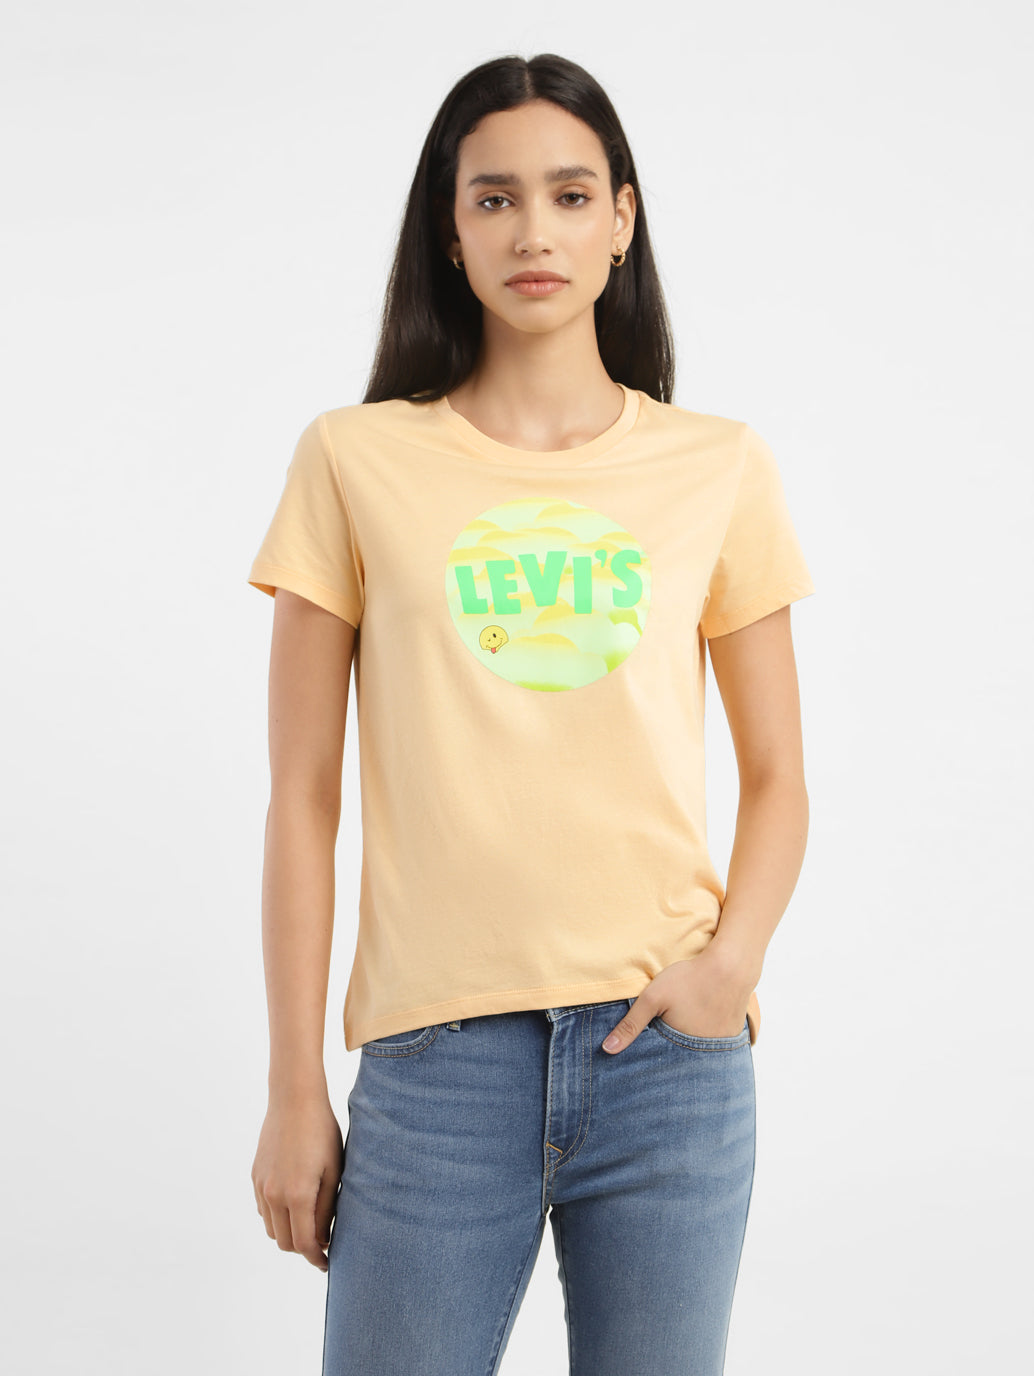 Beyove Women's Deep V T-Shirt Summer Short Sleeve Loose Casual Top(S-XXL)